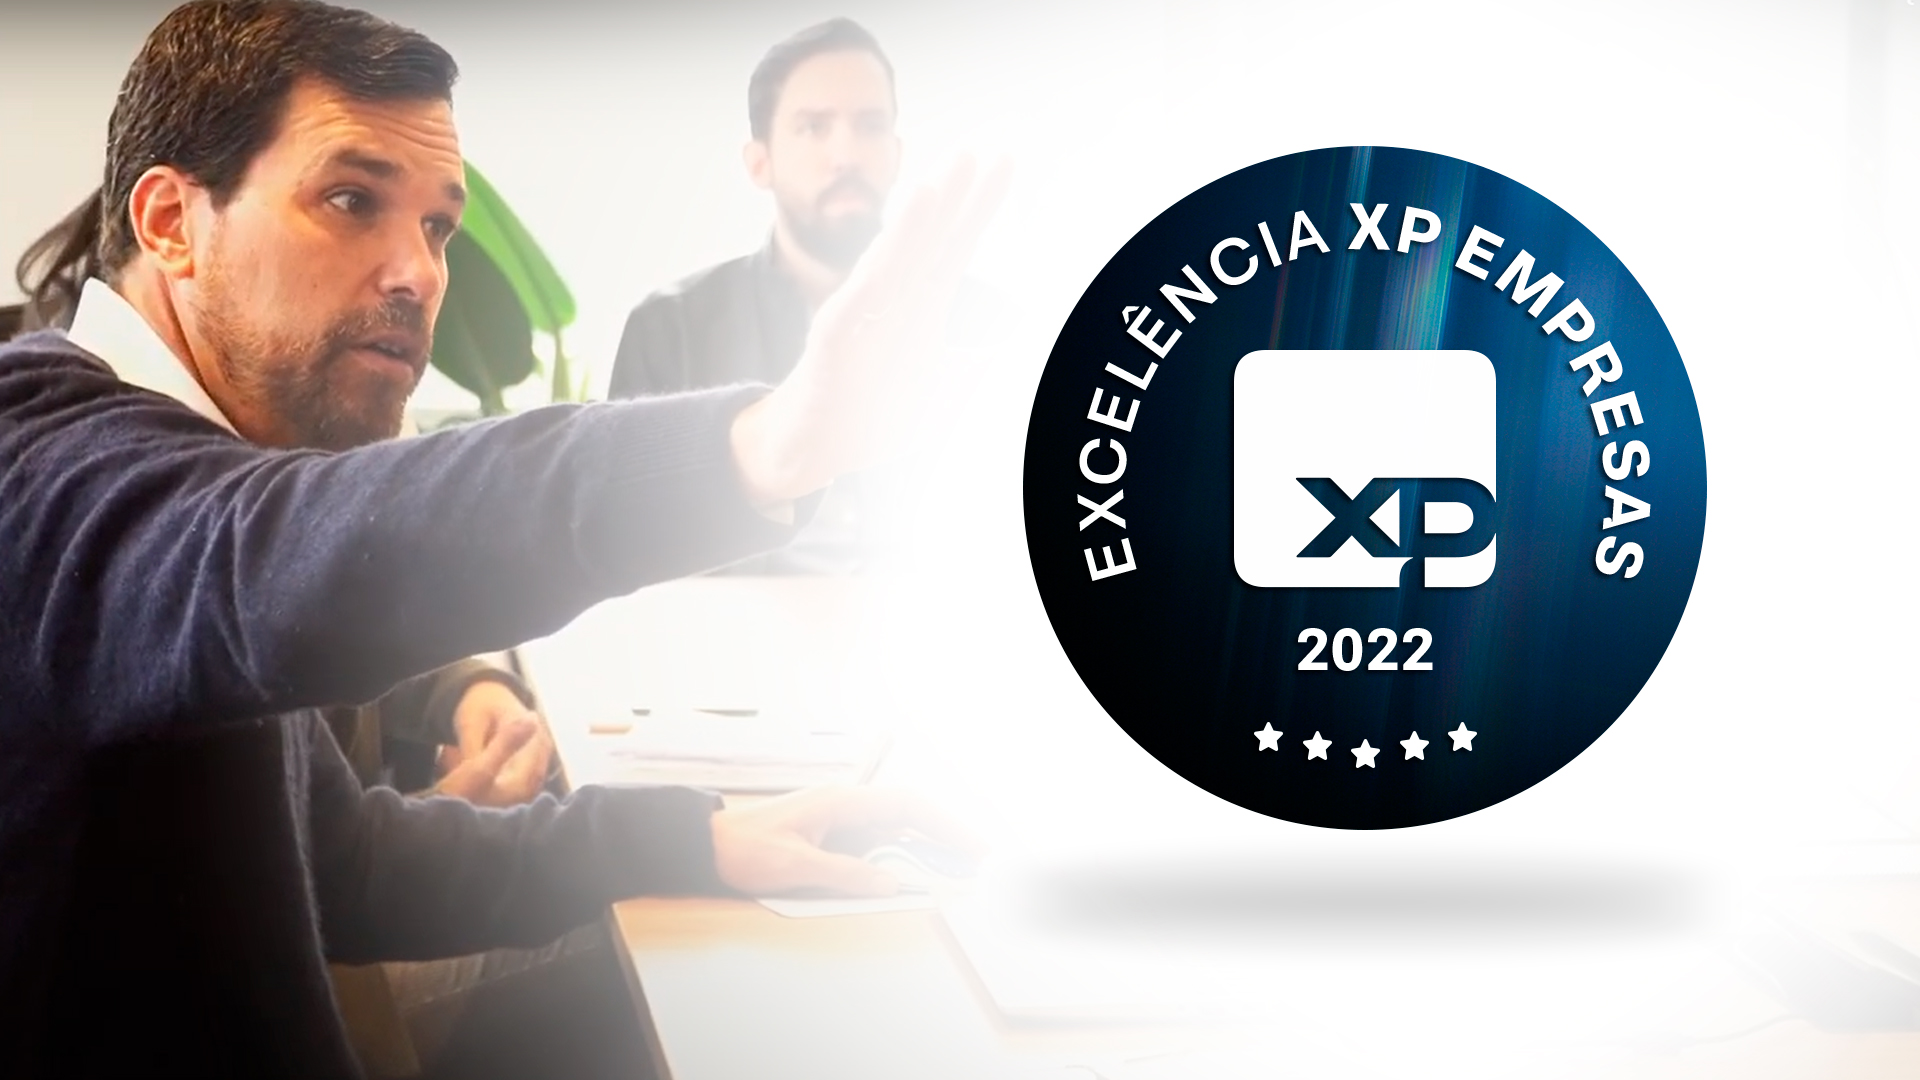 XP premia melhores assessores Pessoa Jurídica com selo PJ